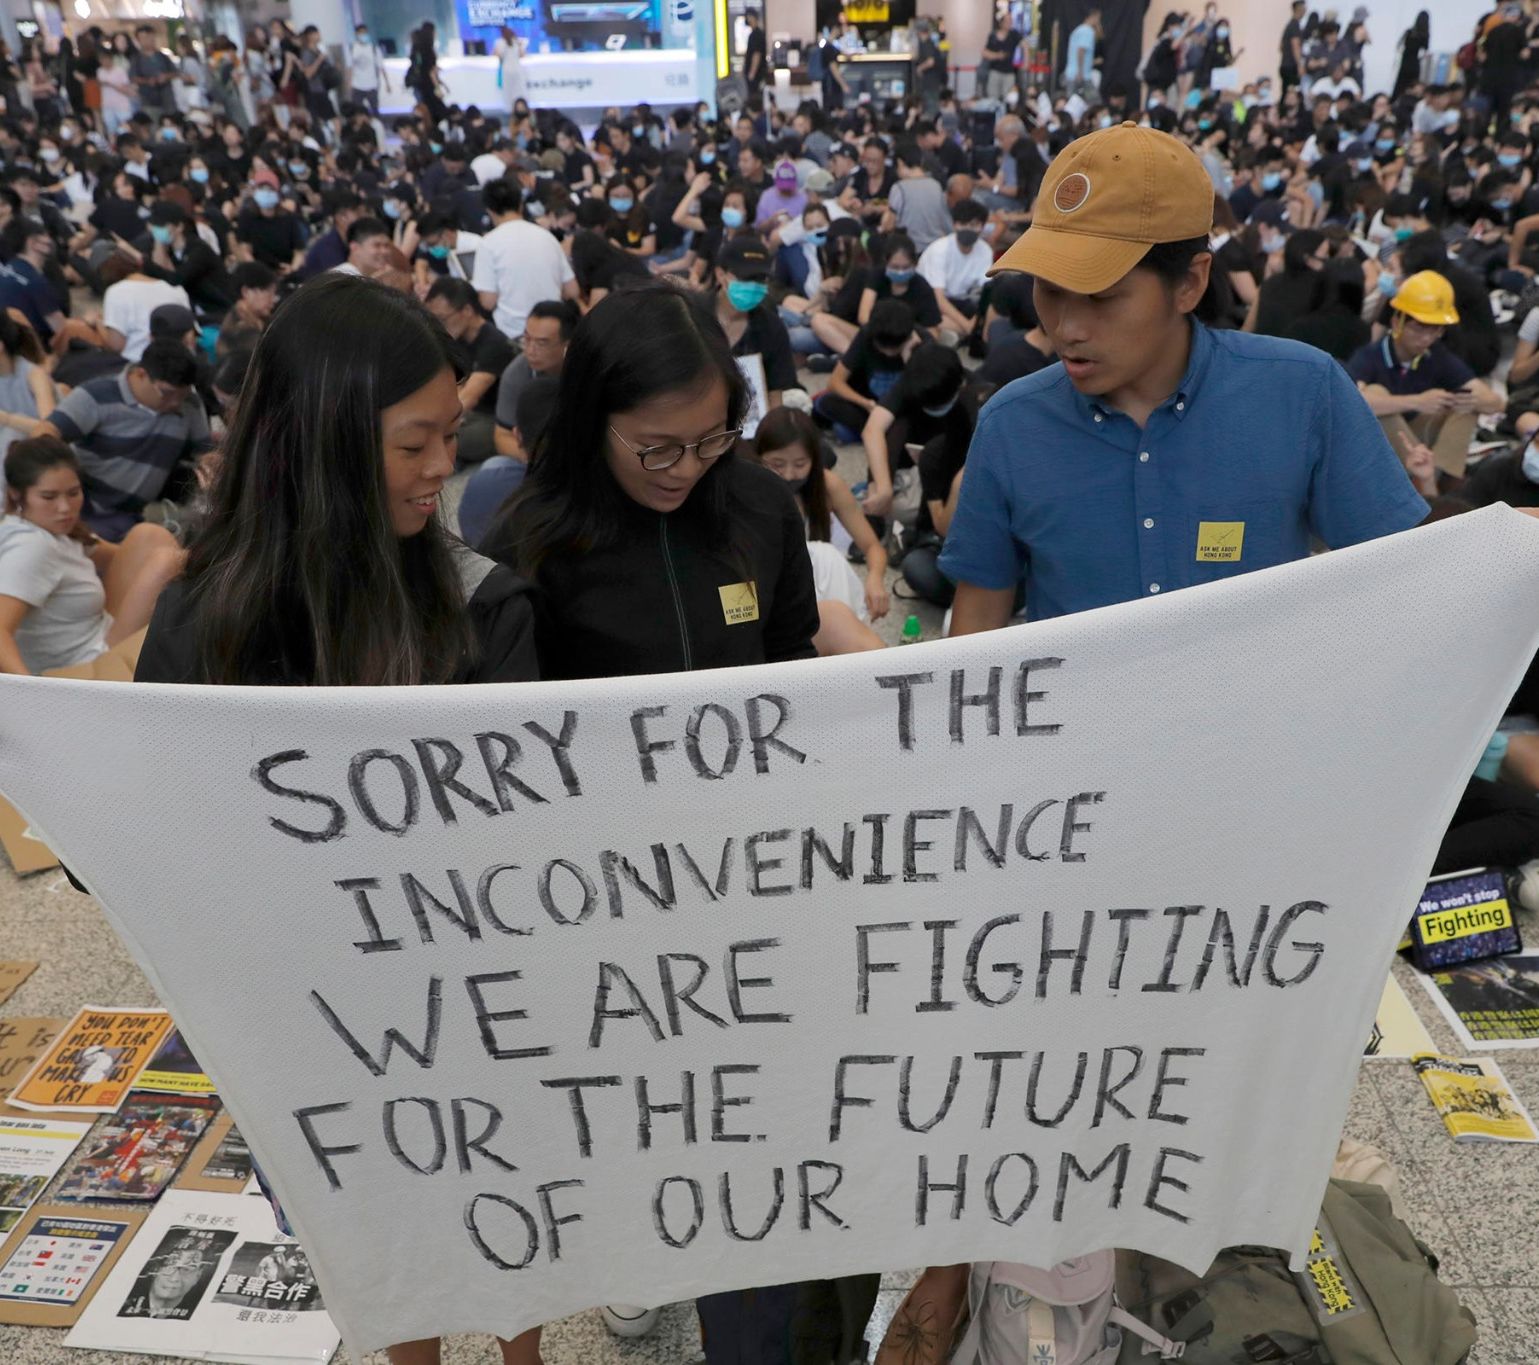 Mi folyik Hongkongban? - PEACH beszélgetés